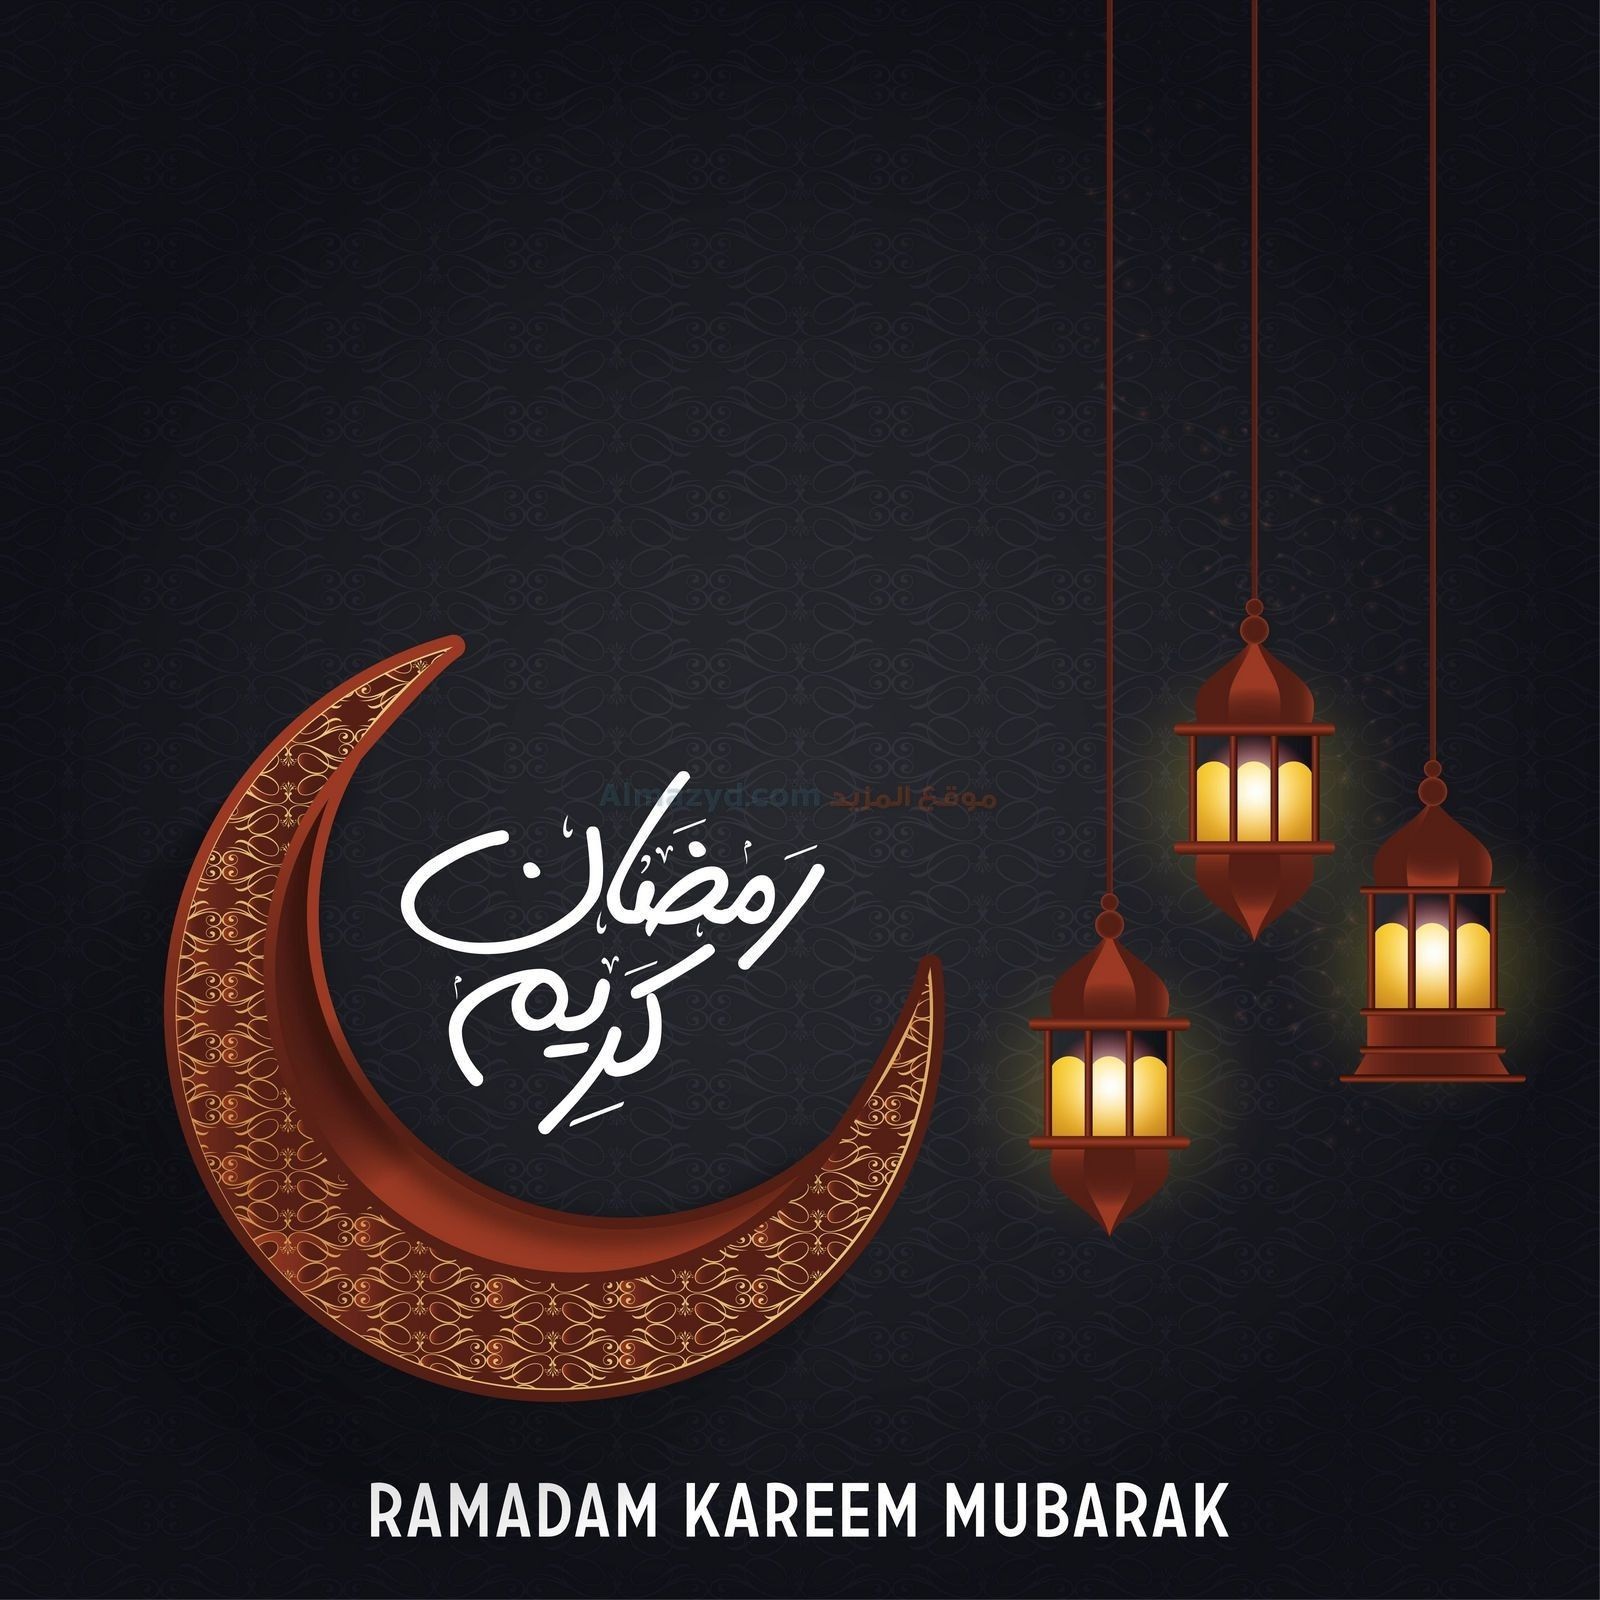 دعاء اليوم الاول من رمضان 2021 أدعية شهر رمضان أول يوم